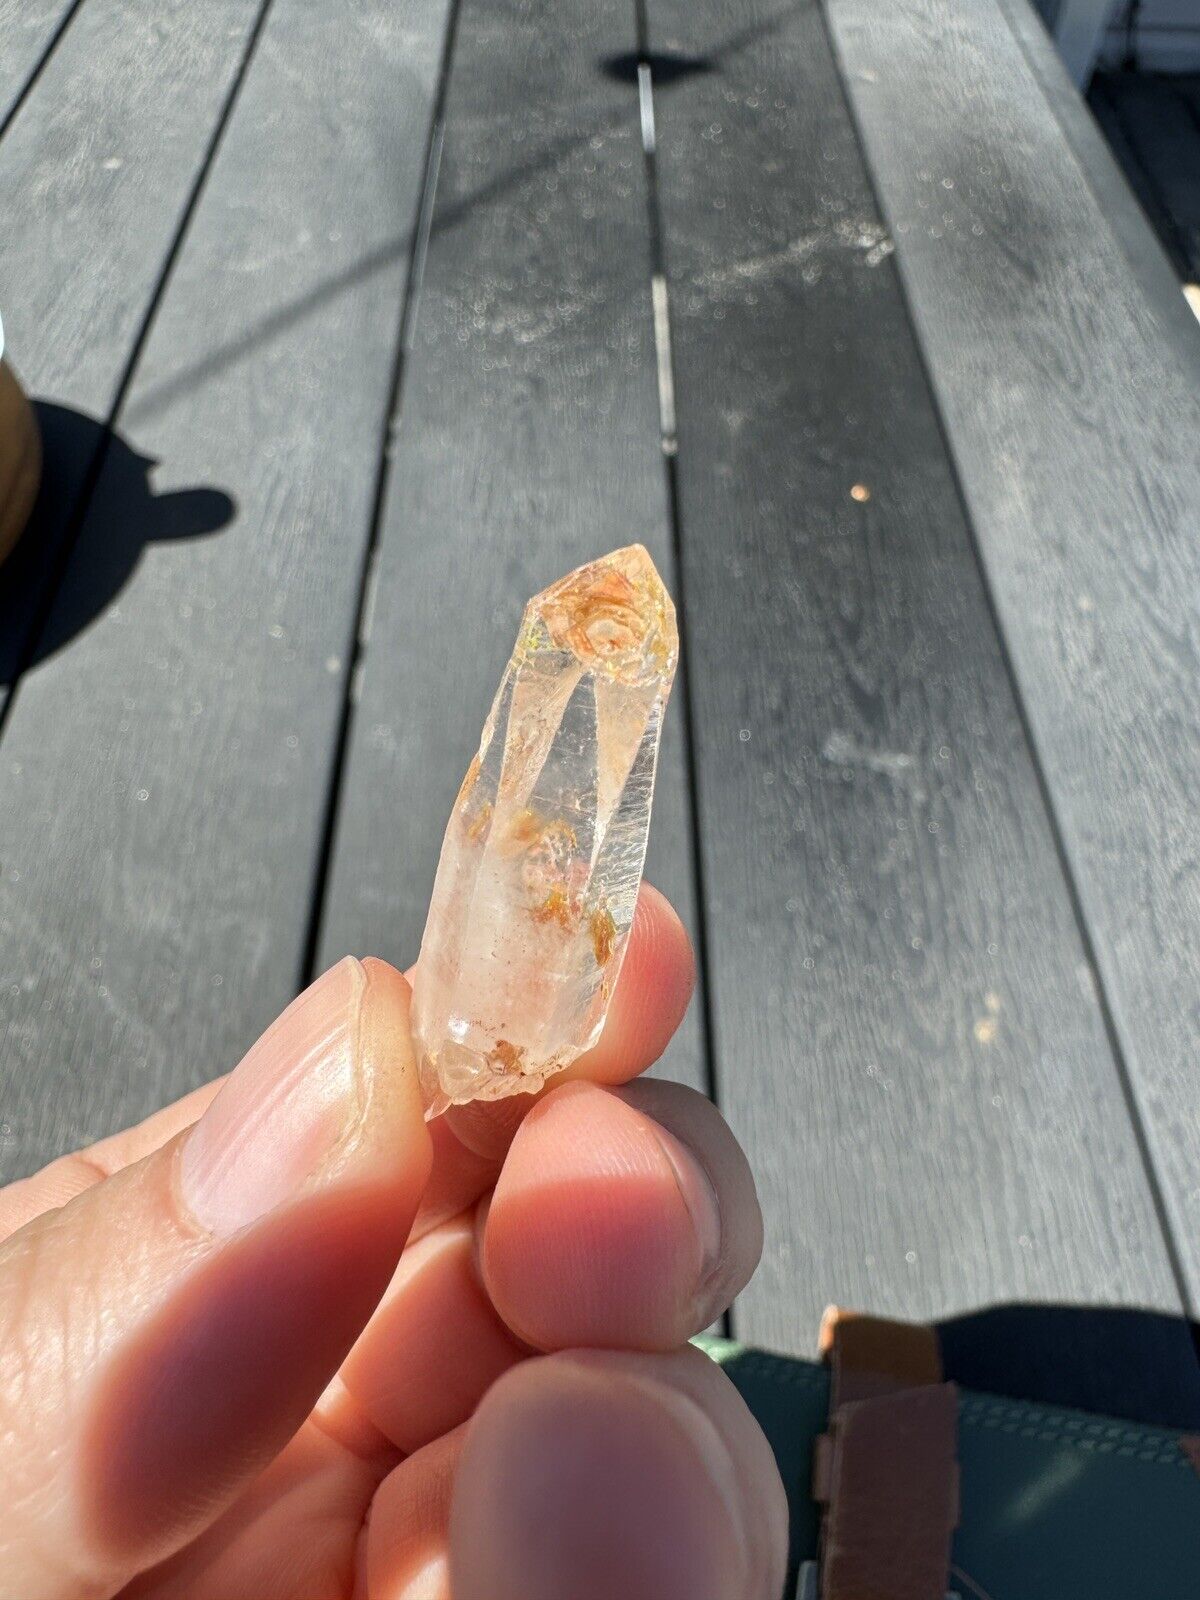 Rare Petroleum UV reactive quartz crystal with enhydros